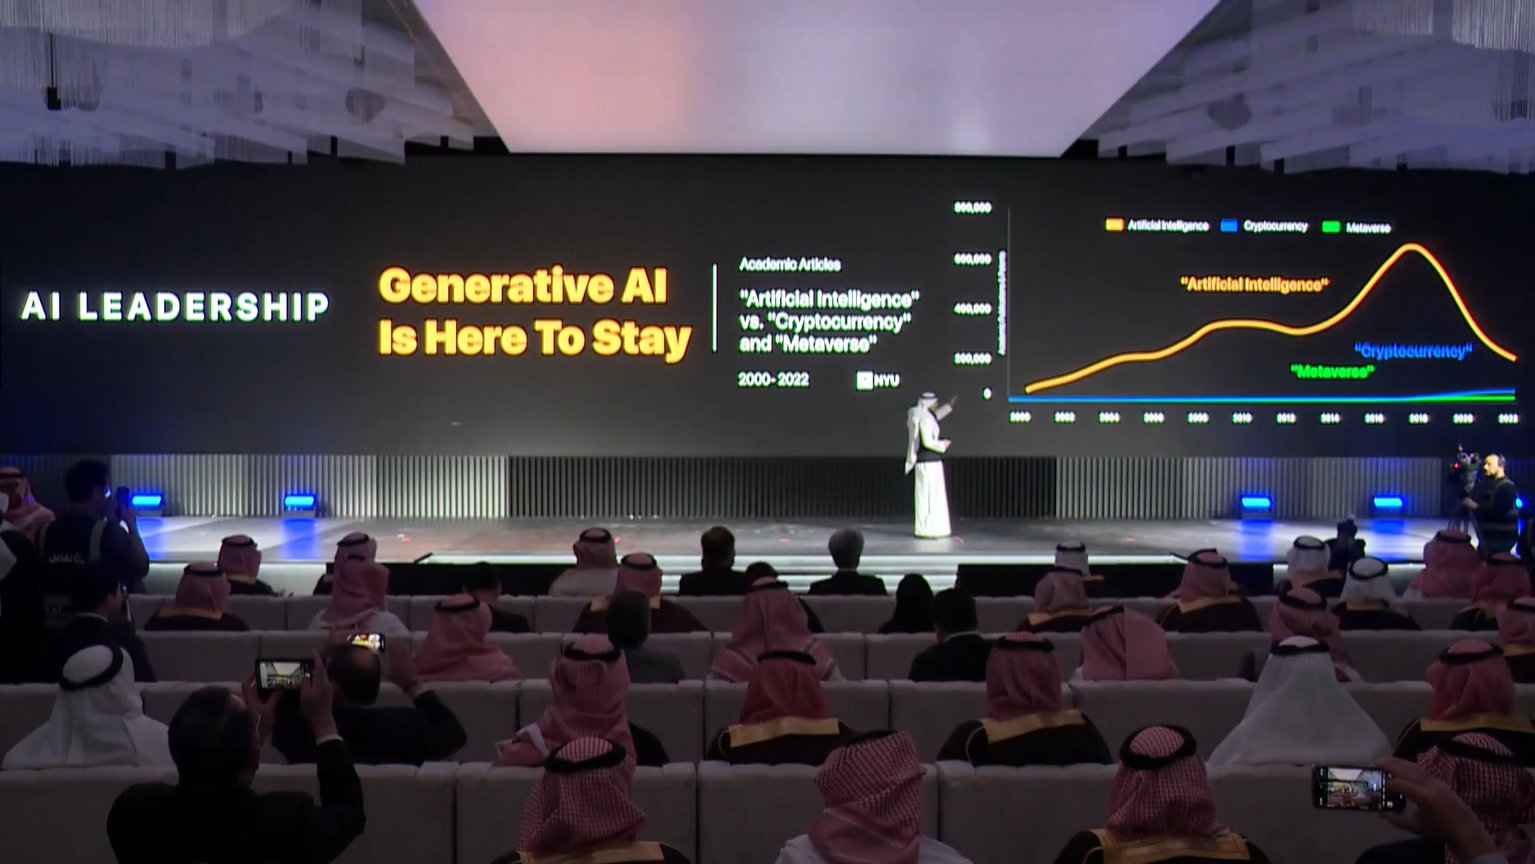 المملكة العربية السعودية تضخ مليار دولار في مسرع الشركات الناشئة في مجال الذكاء الاصطناعي التوليدي